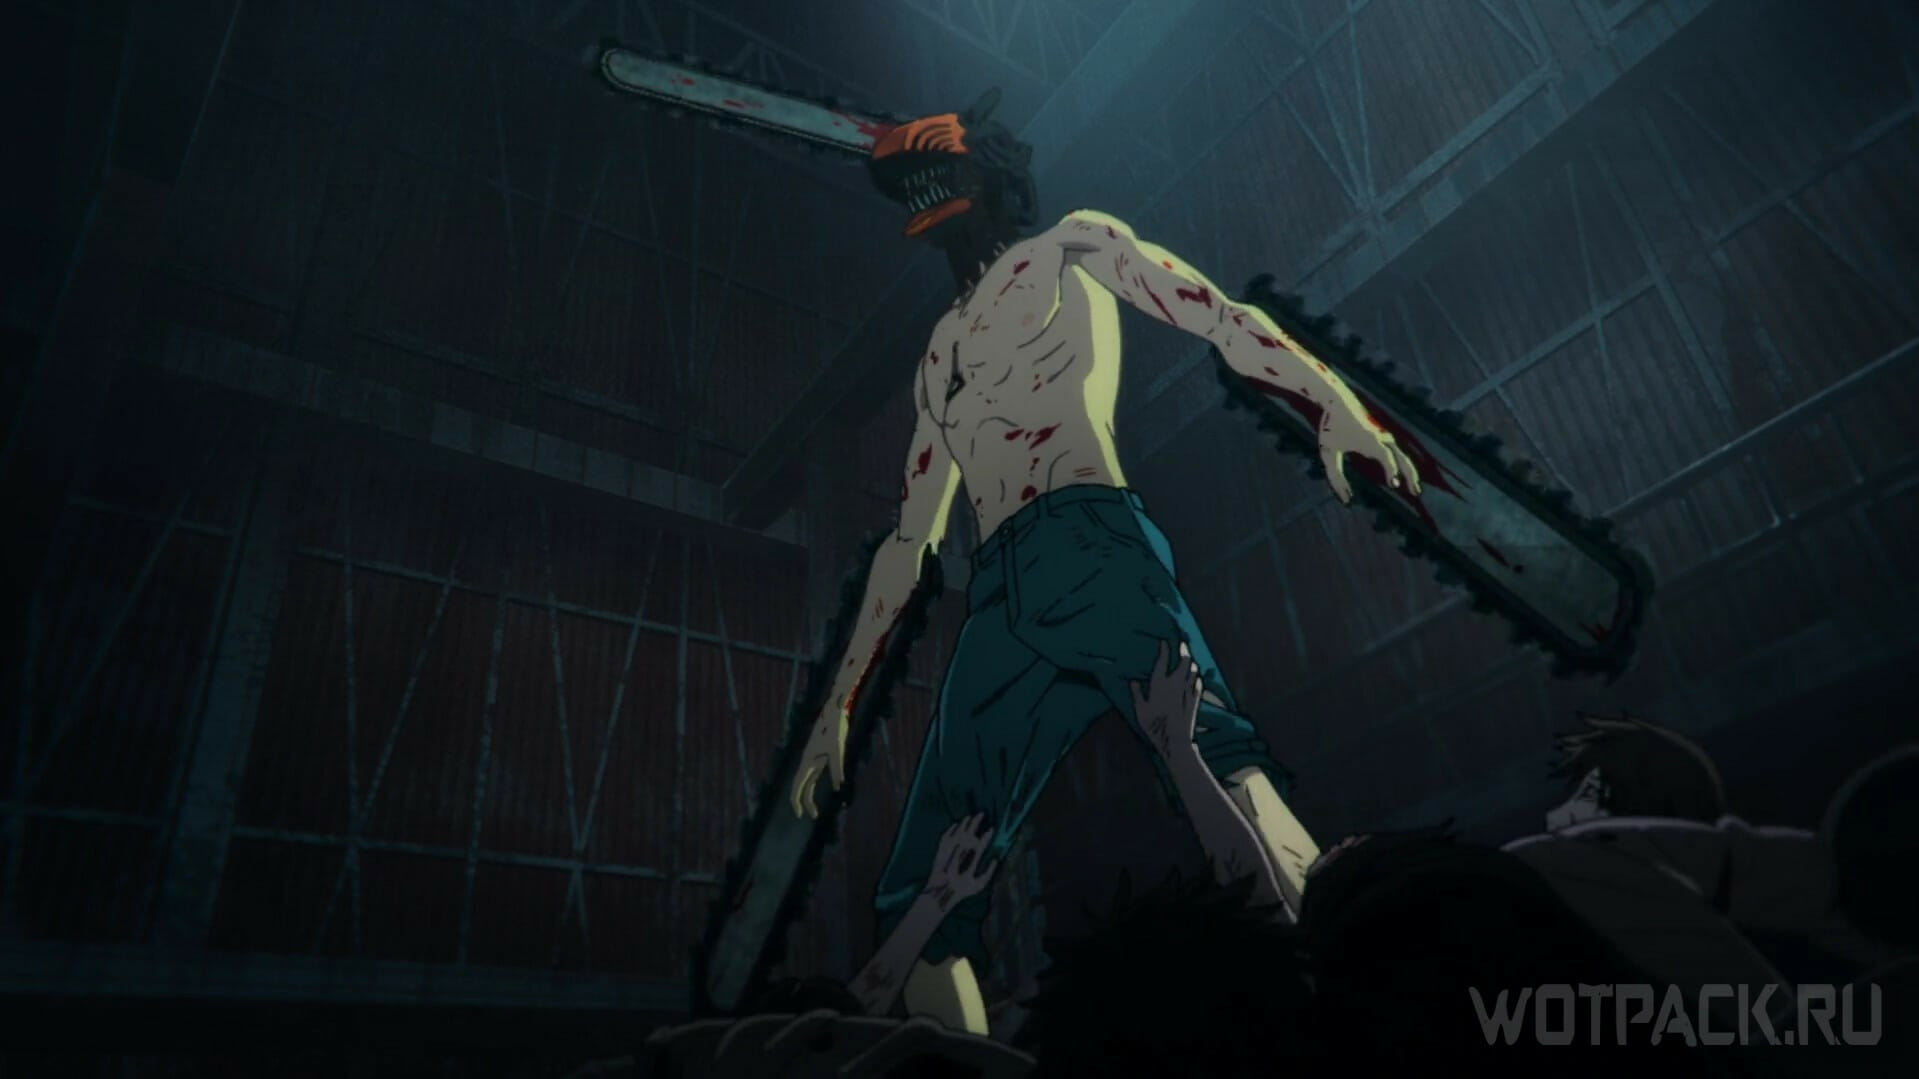 Quantos episódios tem o anime Chainsaw Man